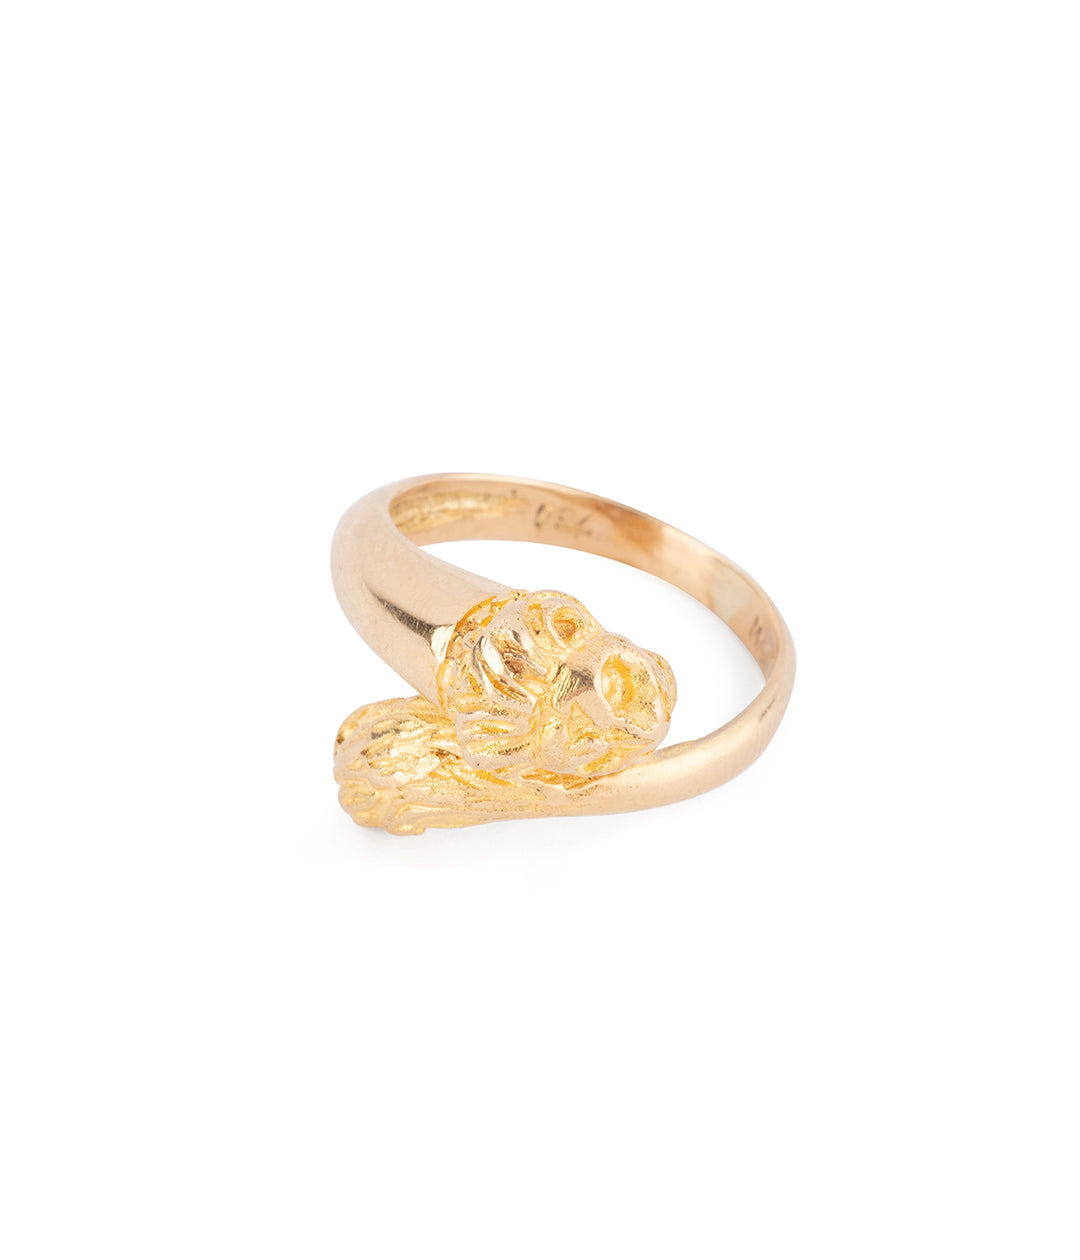 Lion antique gold ring "Lisel" - Caillou Paris